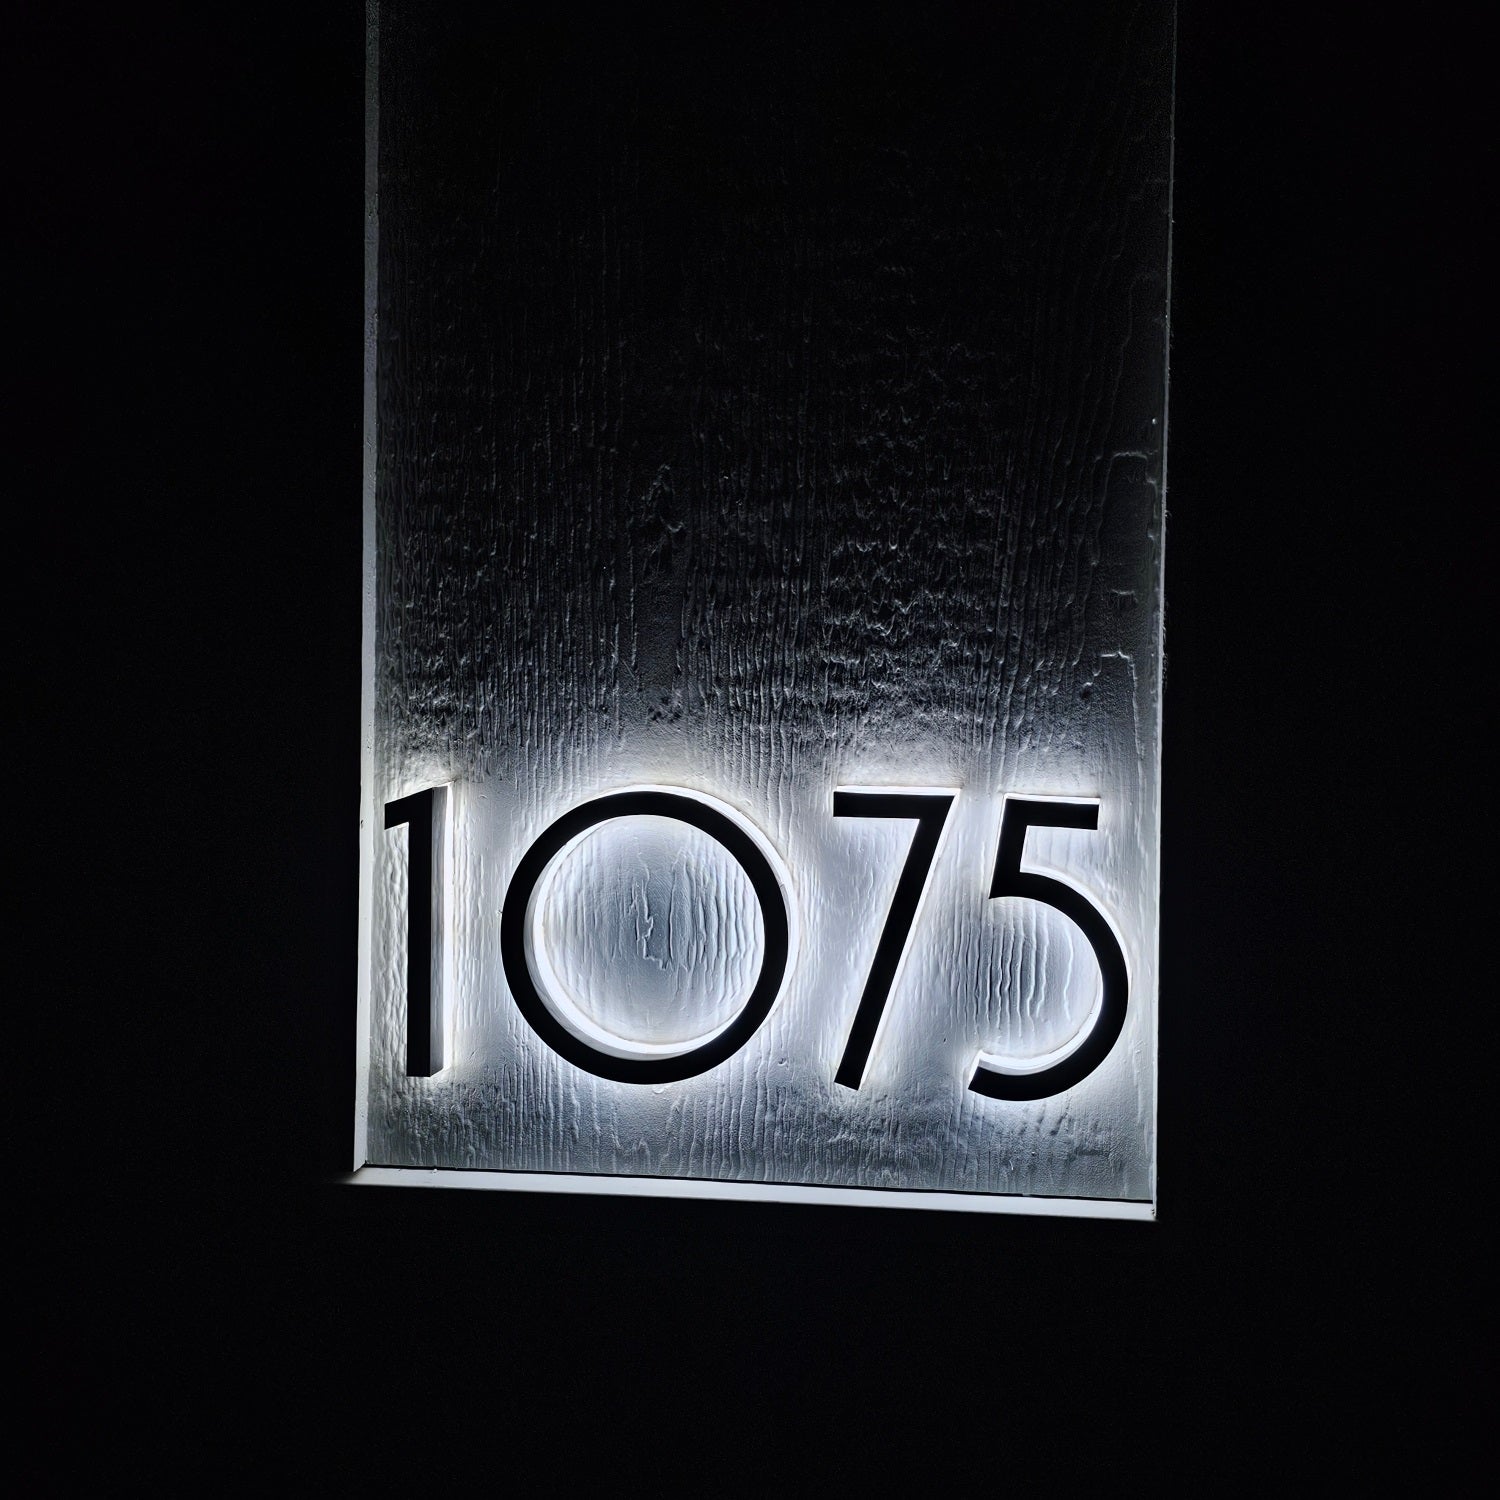 LED Modern Backlit House Address Numbers